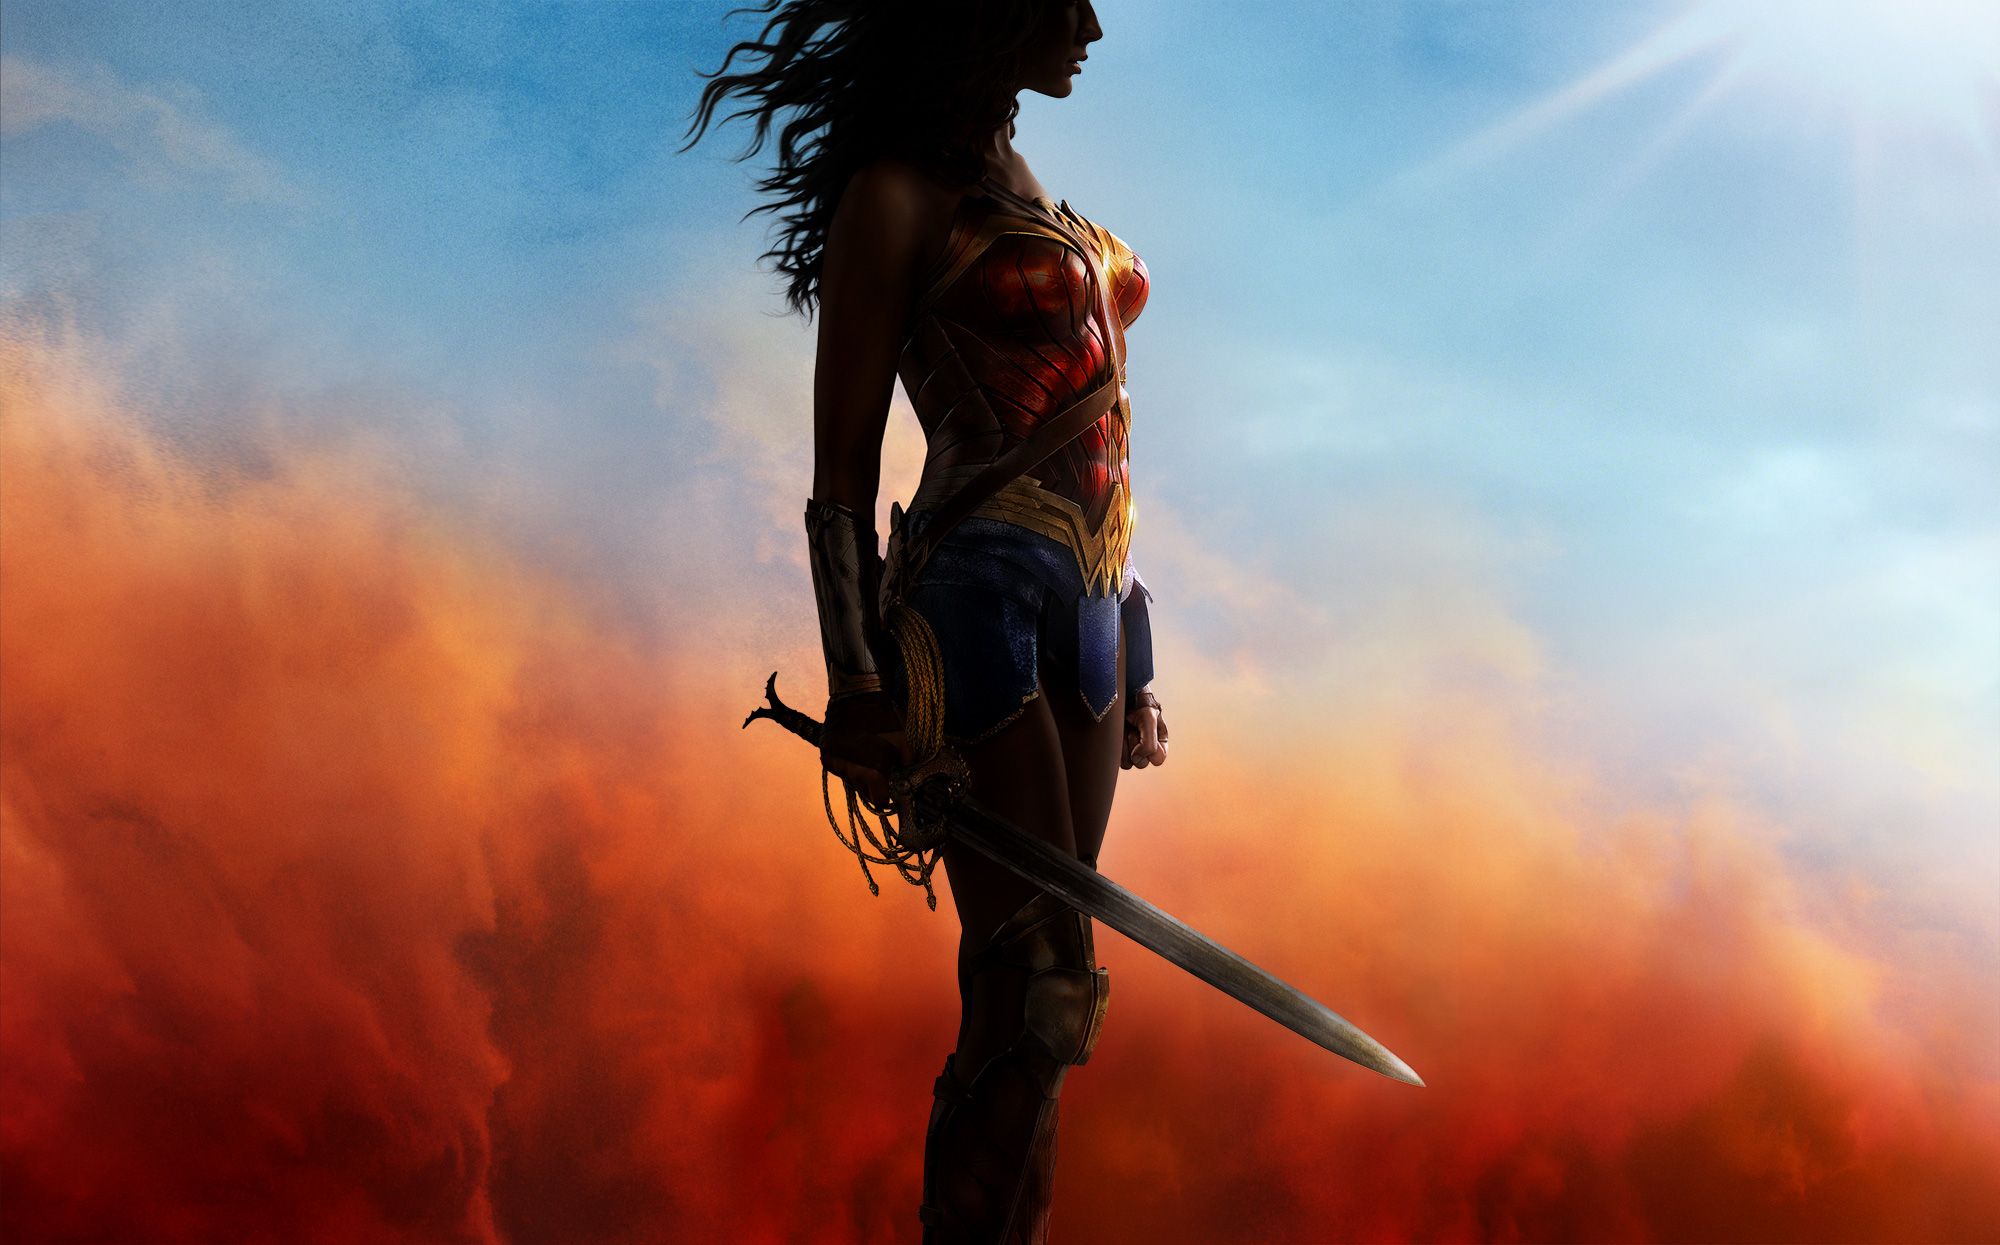 Gorgeous Wonder Woman desktop wallpaper from the official website